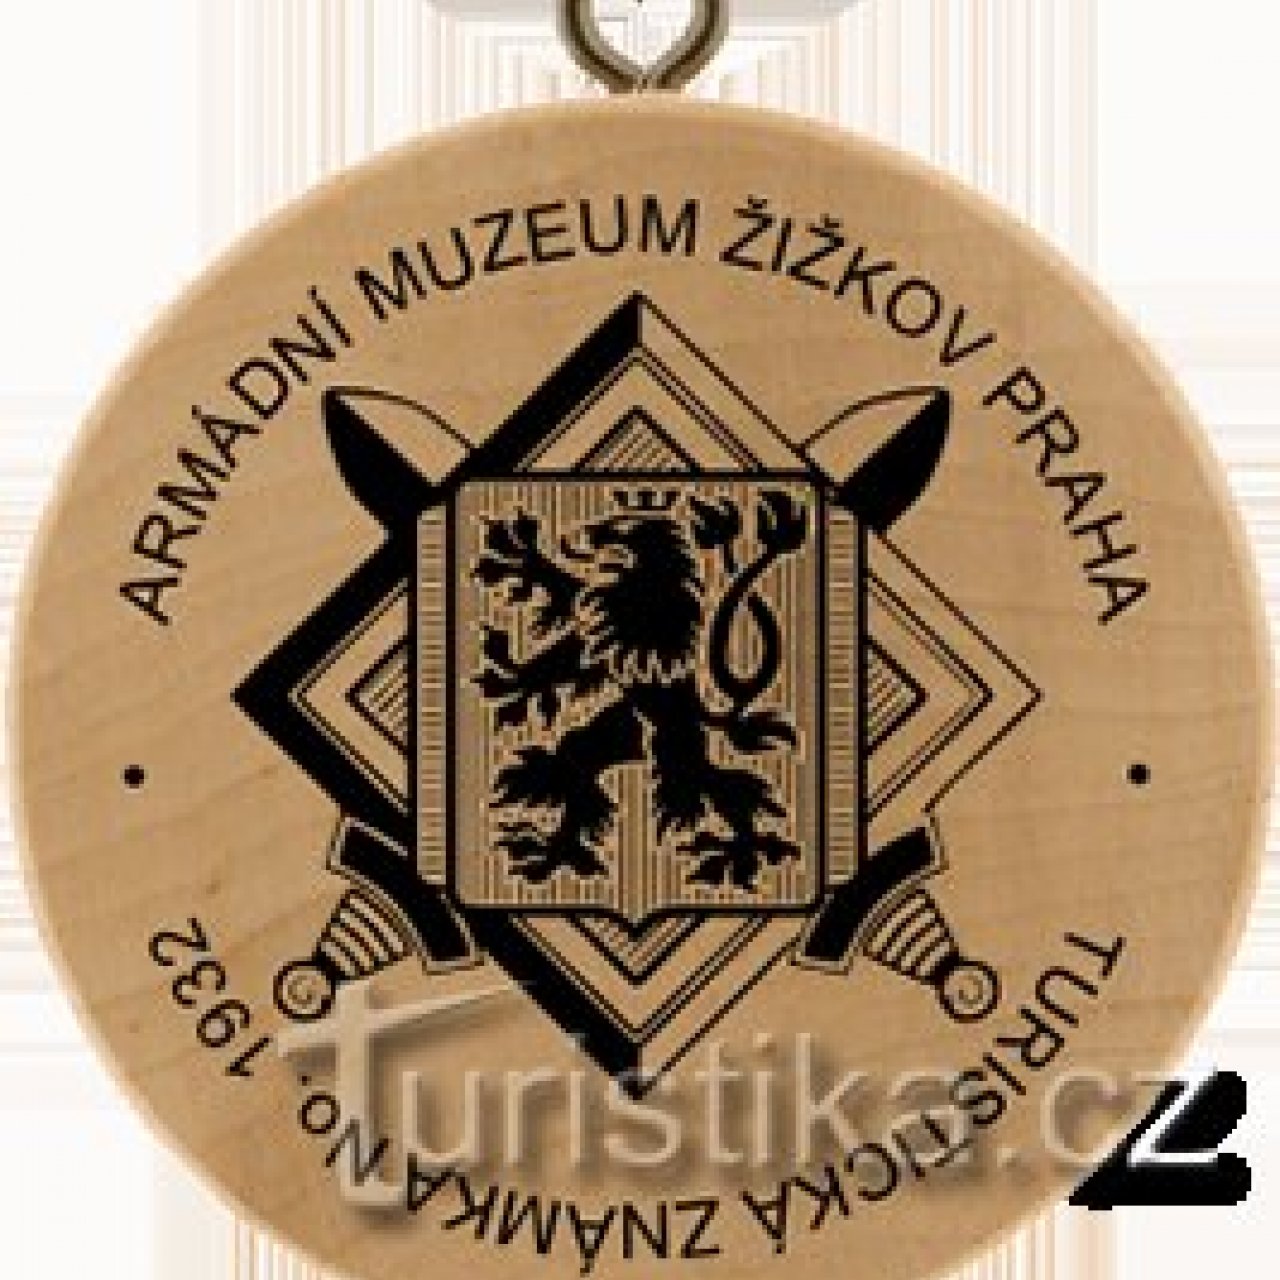 Turistická známka č. 1932 - Armádní muzeum Žižkov Praha